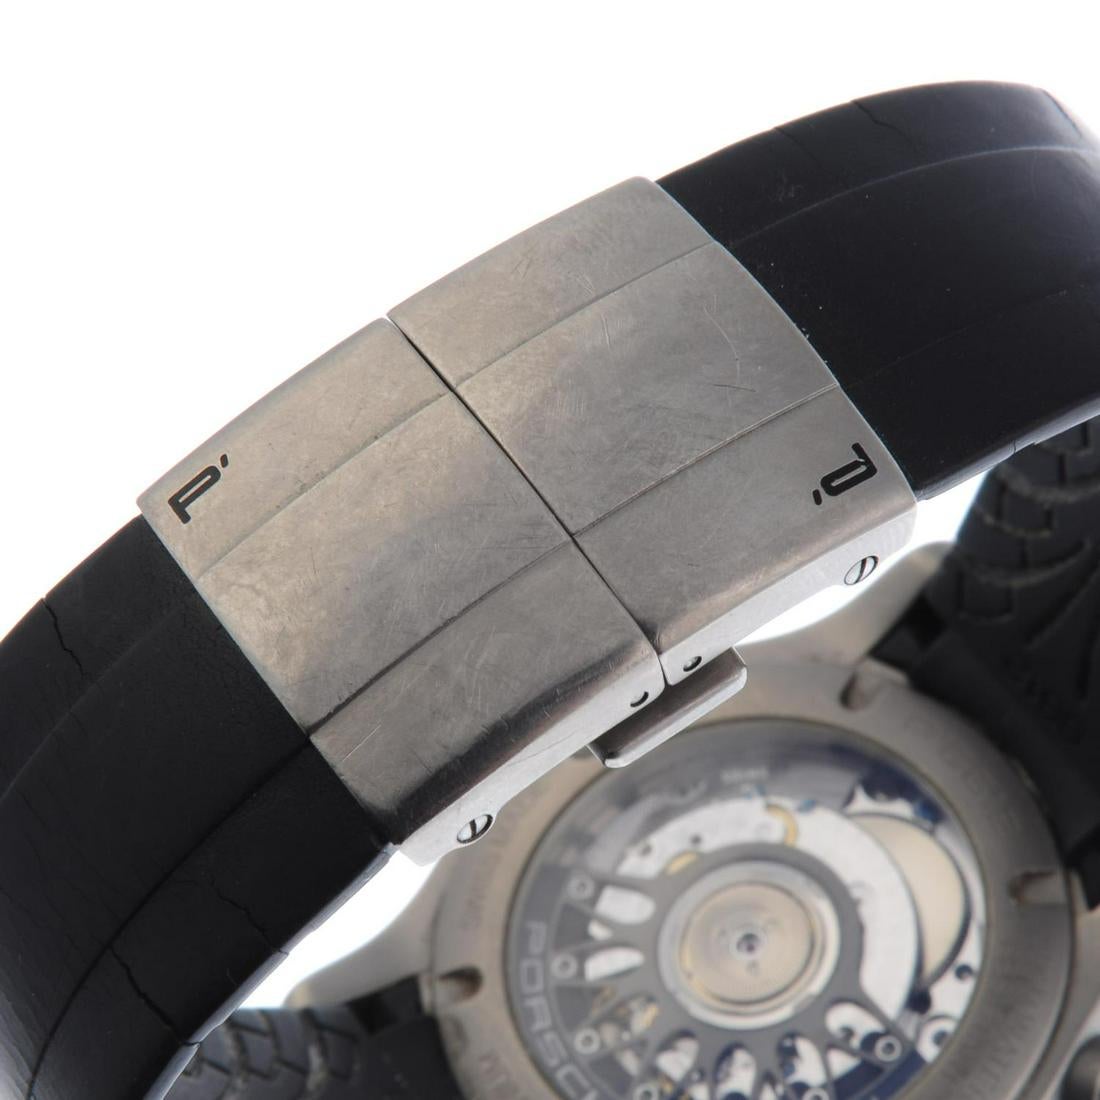 Porsche Design / Dashboard chronograph - Gentlmen's Titanium Wrist Watch - Image 3 of 5